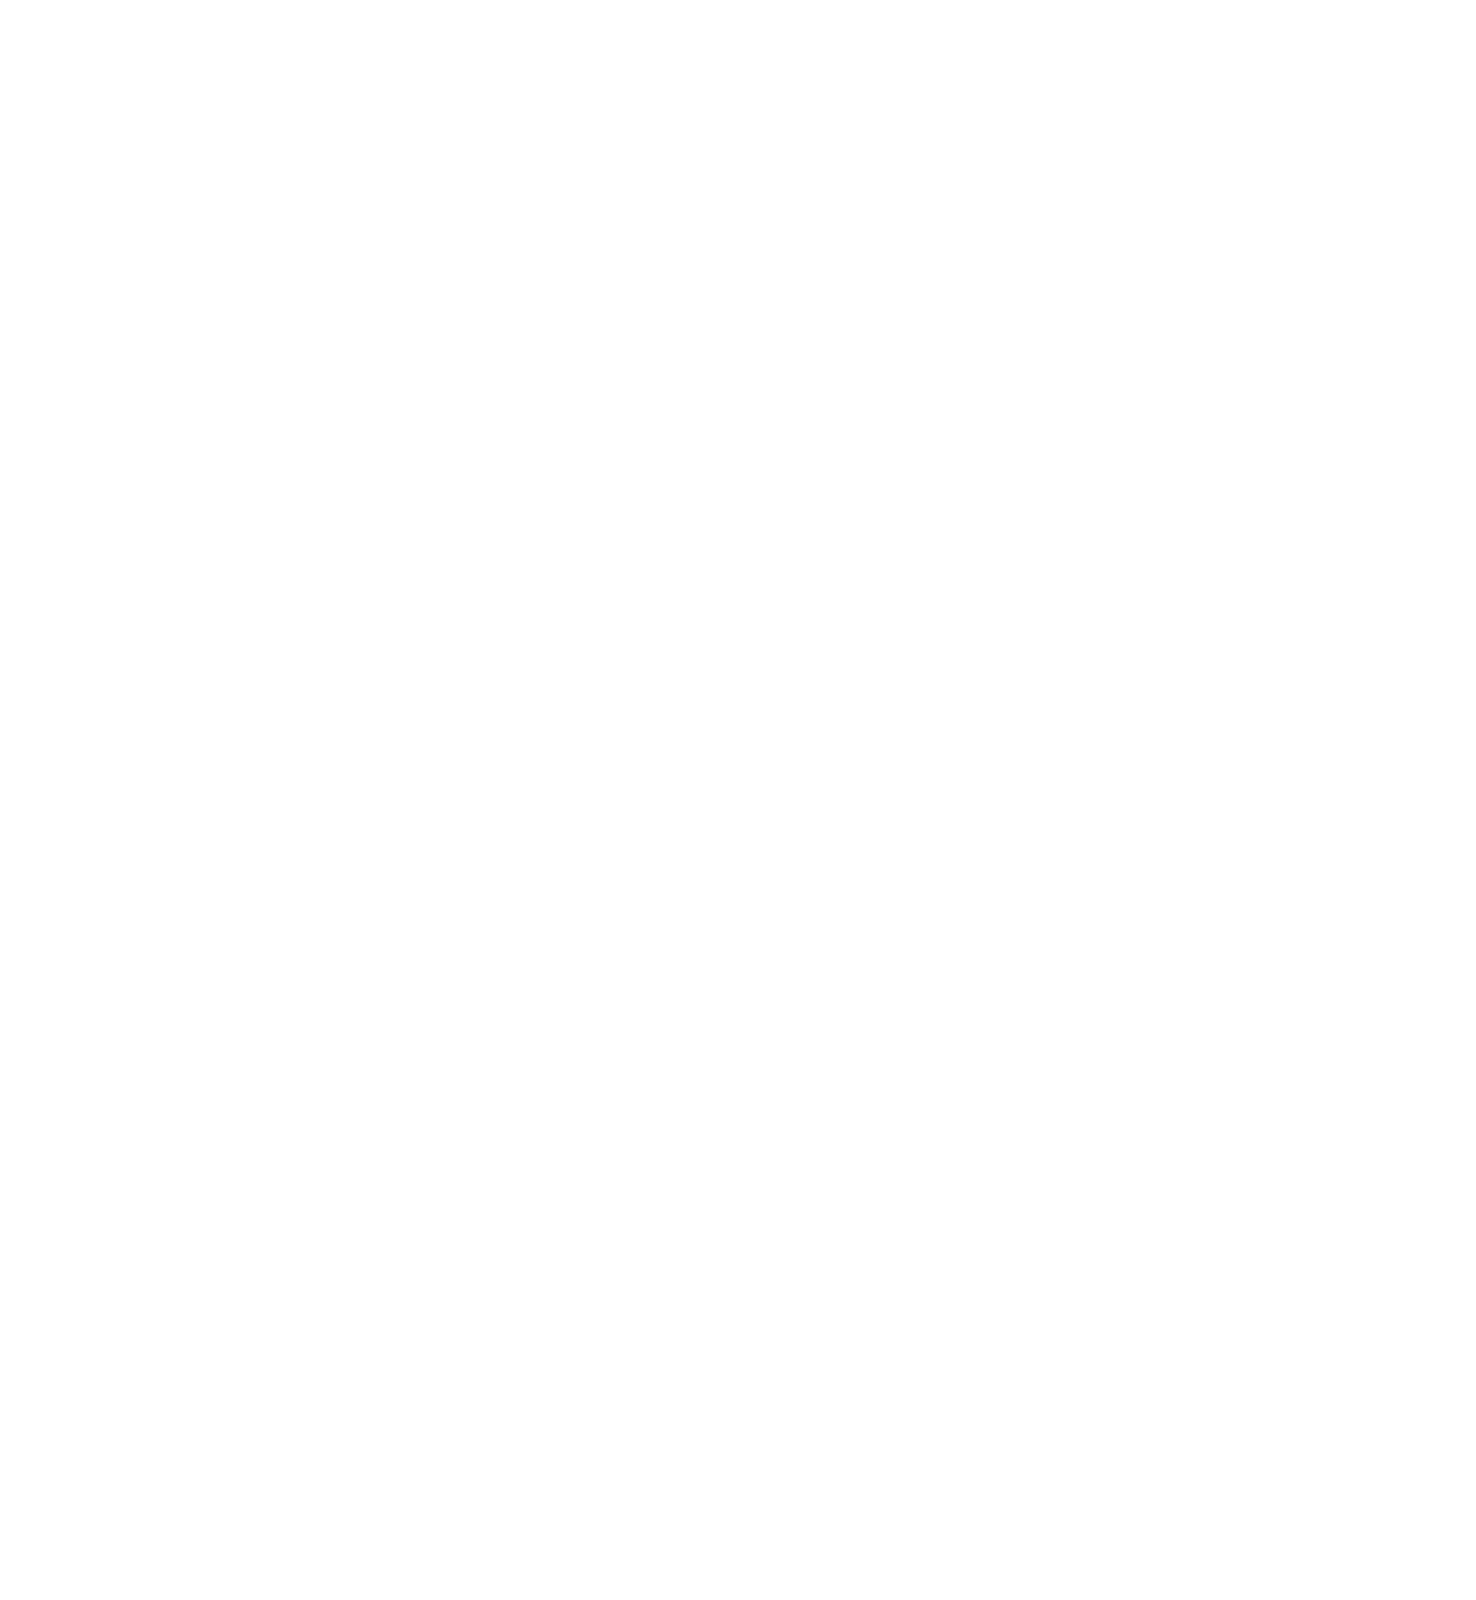 大橋トリオ、最新アルバム収録曲「テレパシー」を明日J-WAVEにて初フルサイズオンエア決定サムネイル画像!